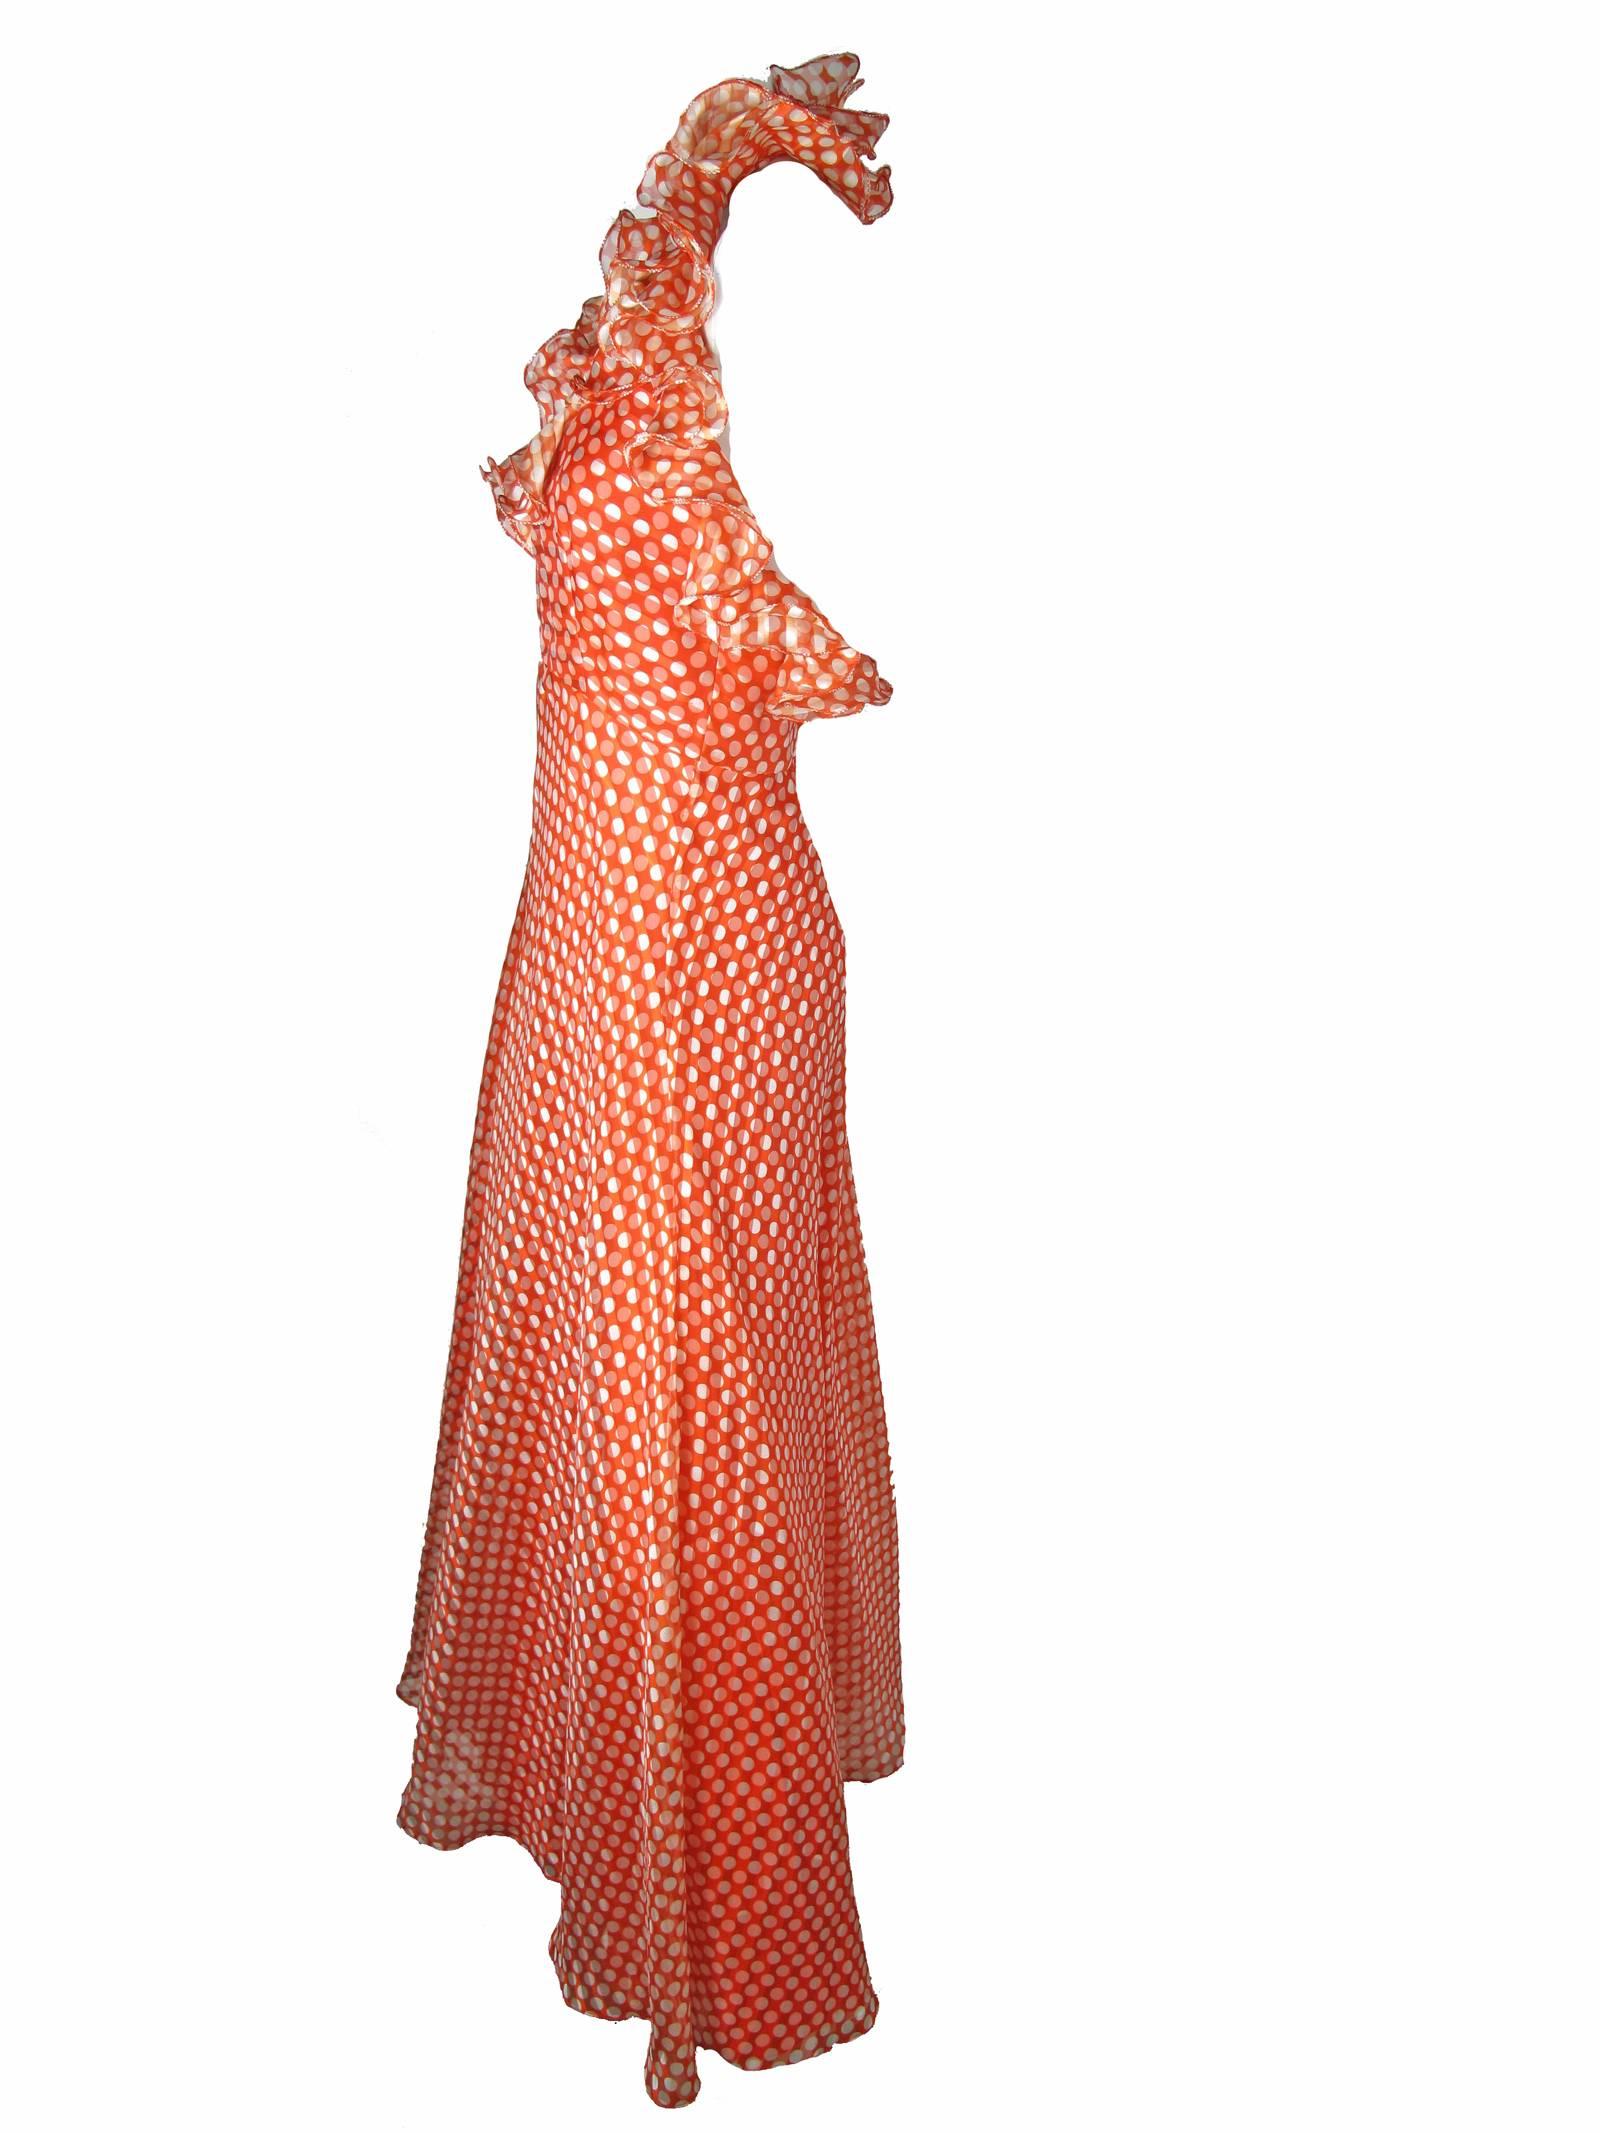 Orange Geoffrey Beene Silk Halter Gown, 1970s 